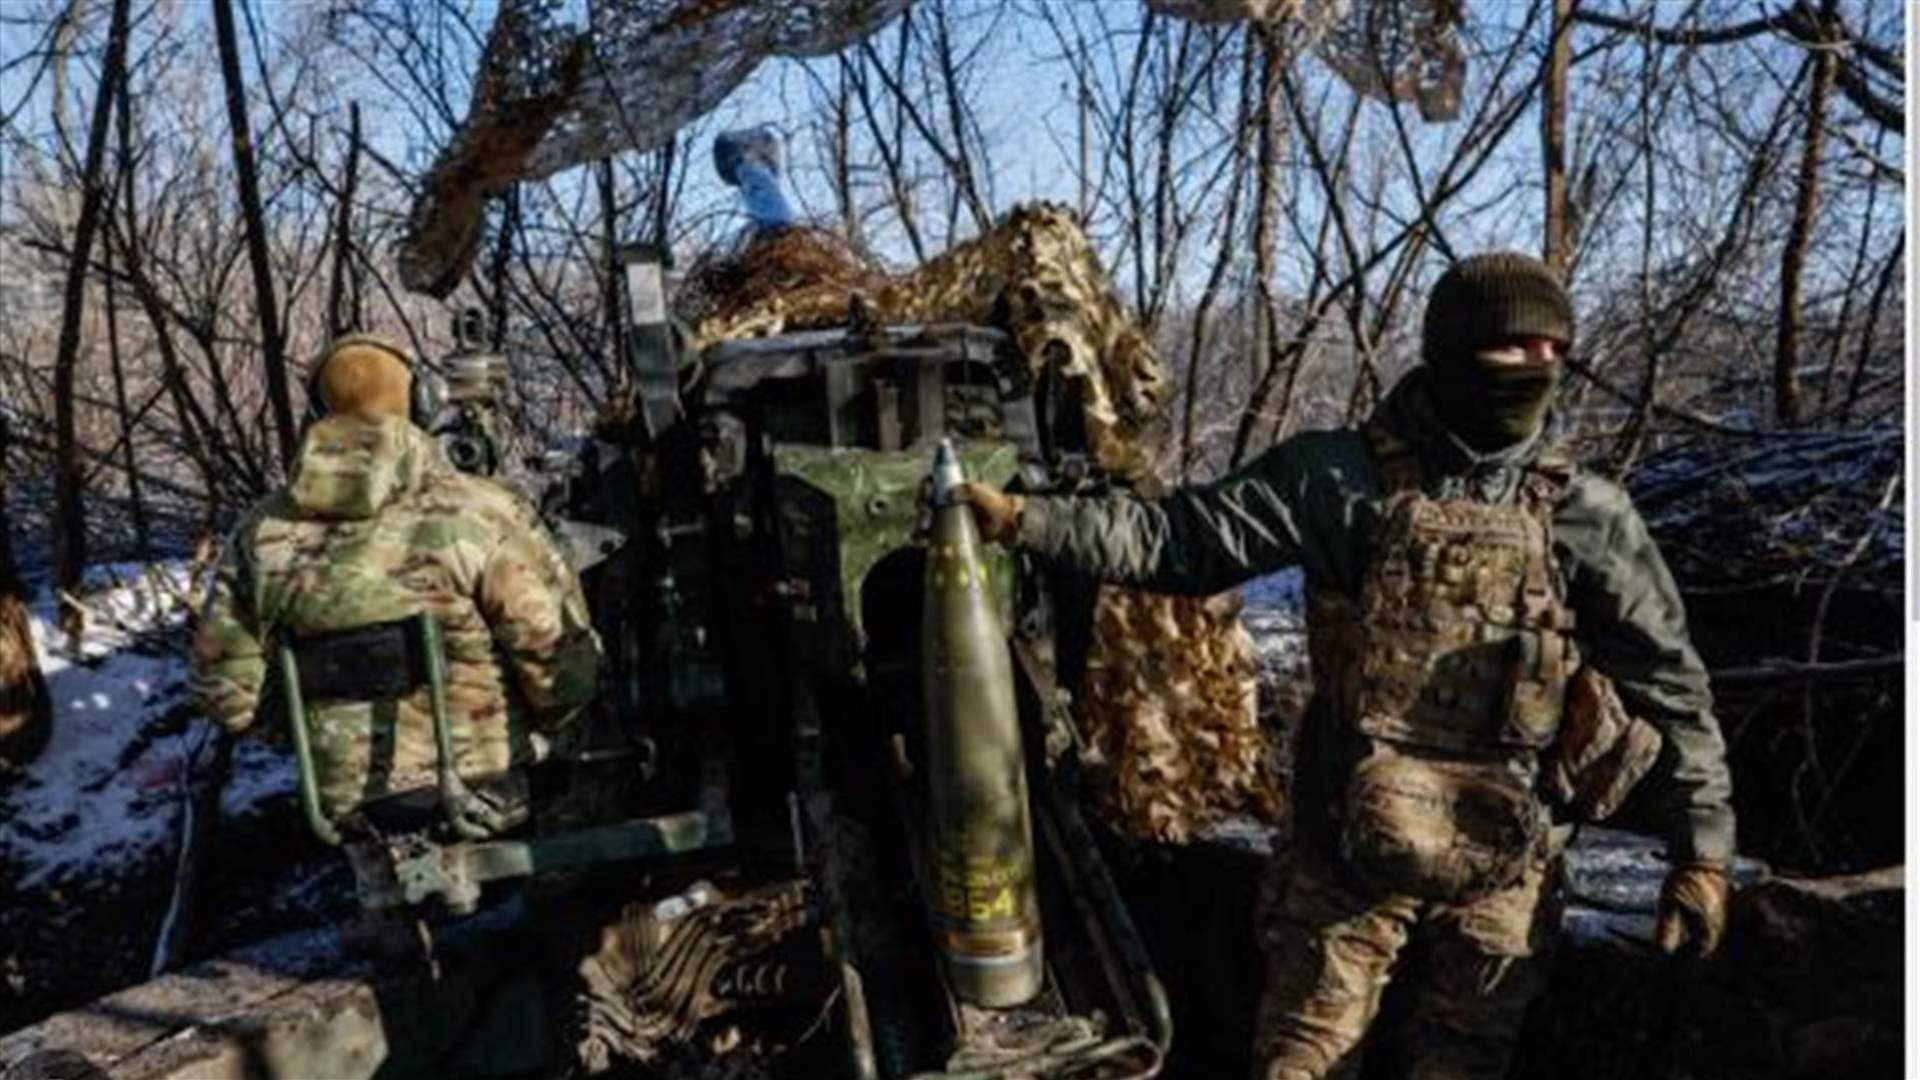 رفع الحظر الأميركي عن وحدة آزوف الأوكرانية المثيرة للجدل